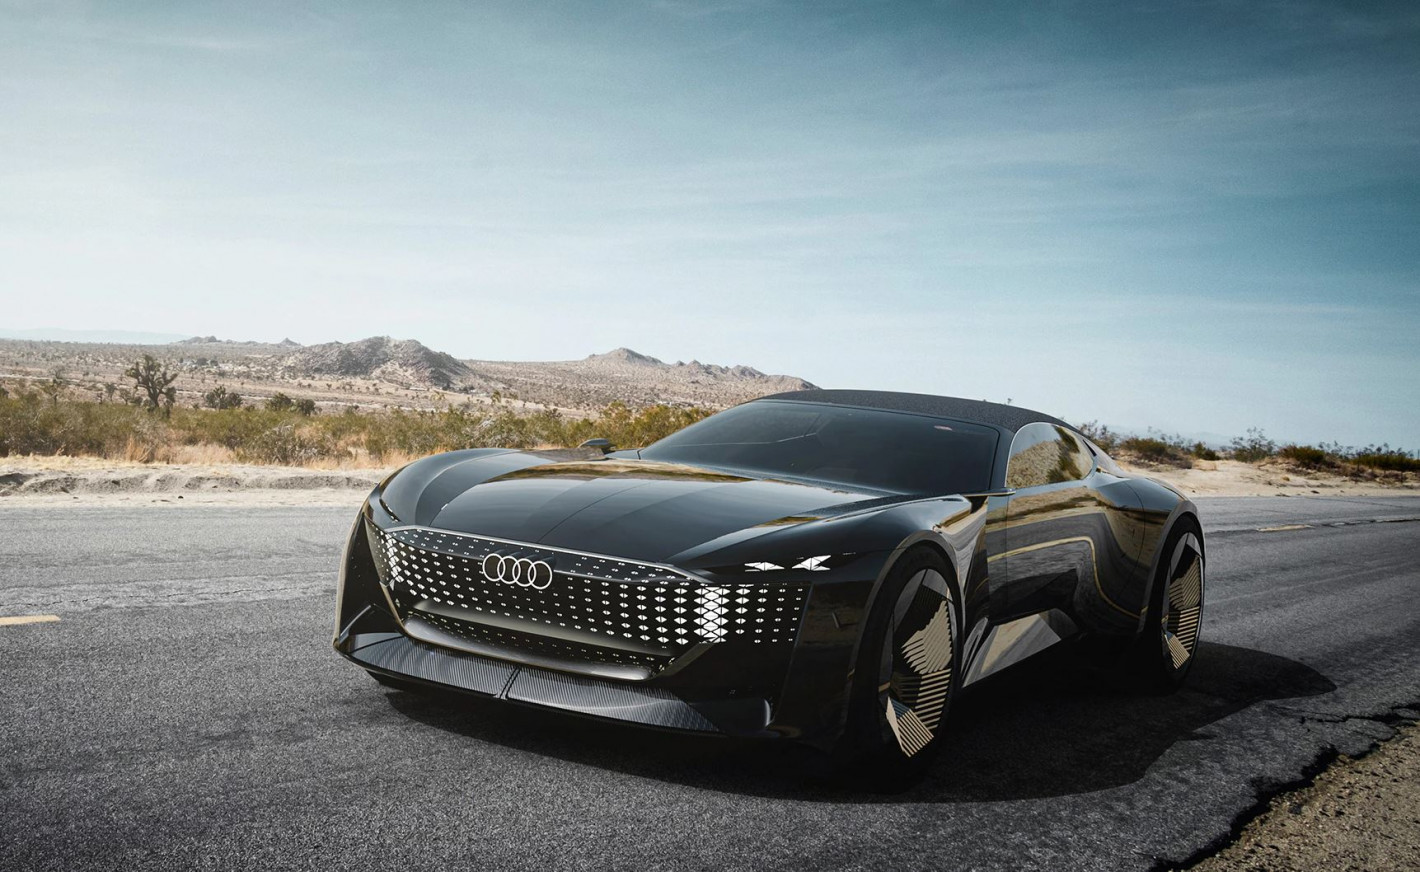 Audi skysphere, un concept de roadster électrique luxueux